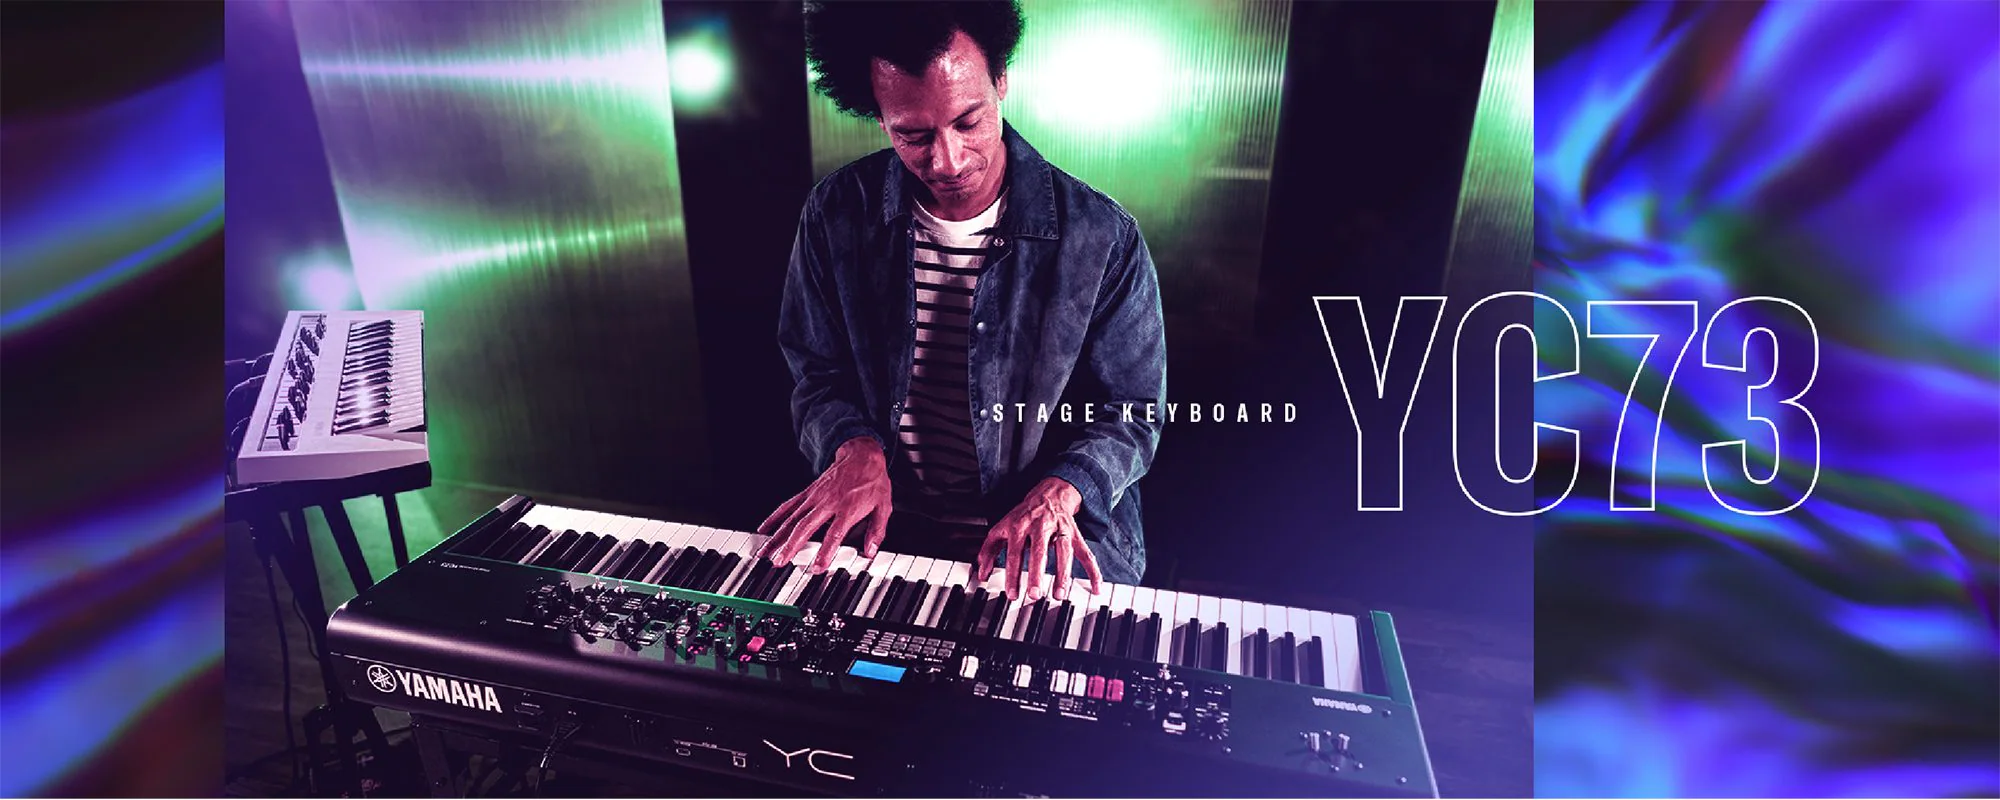 Đàn Organ Yamaha YC73